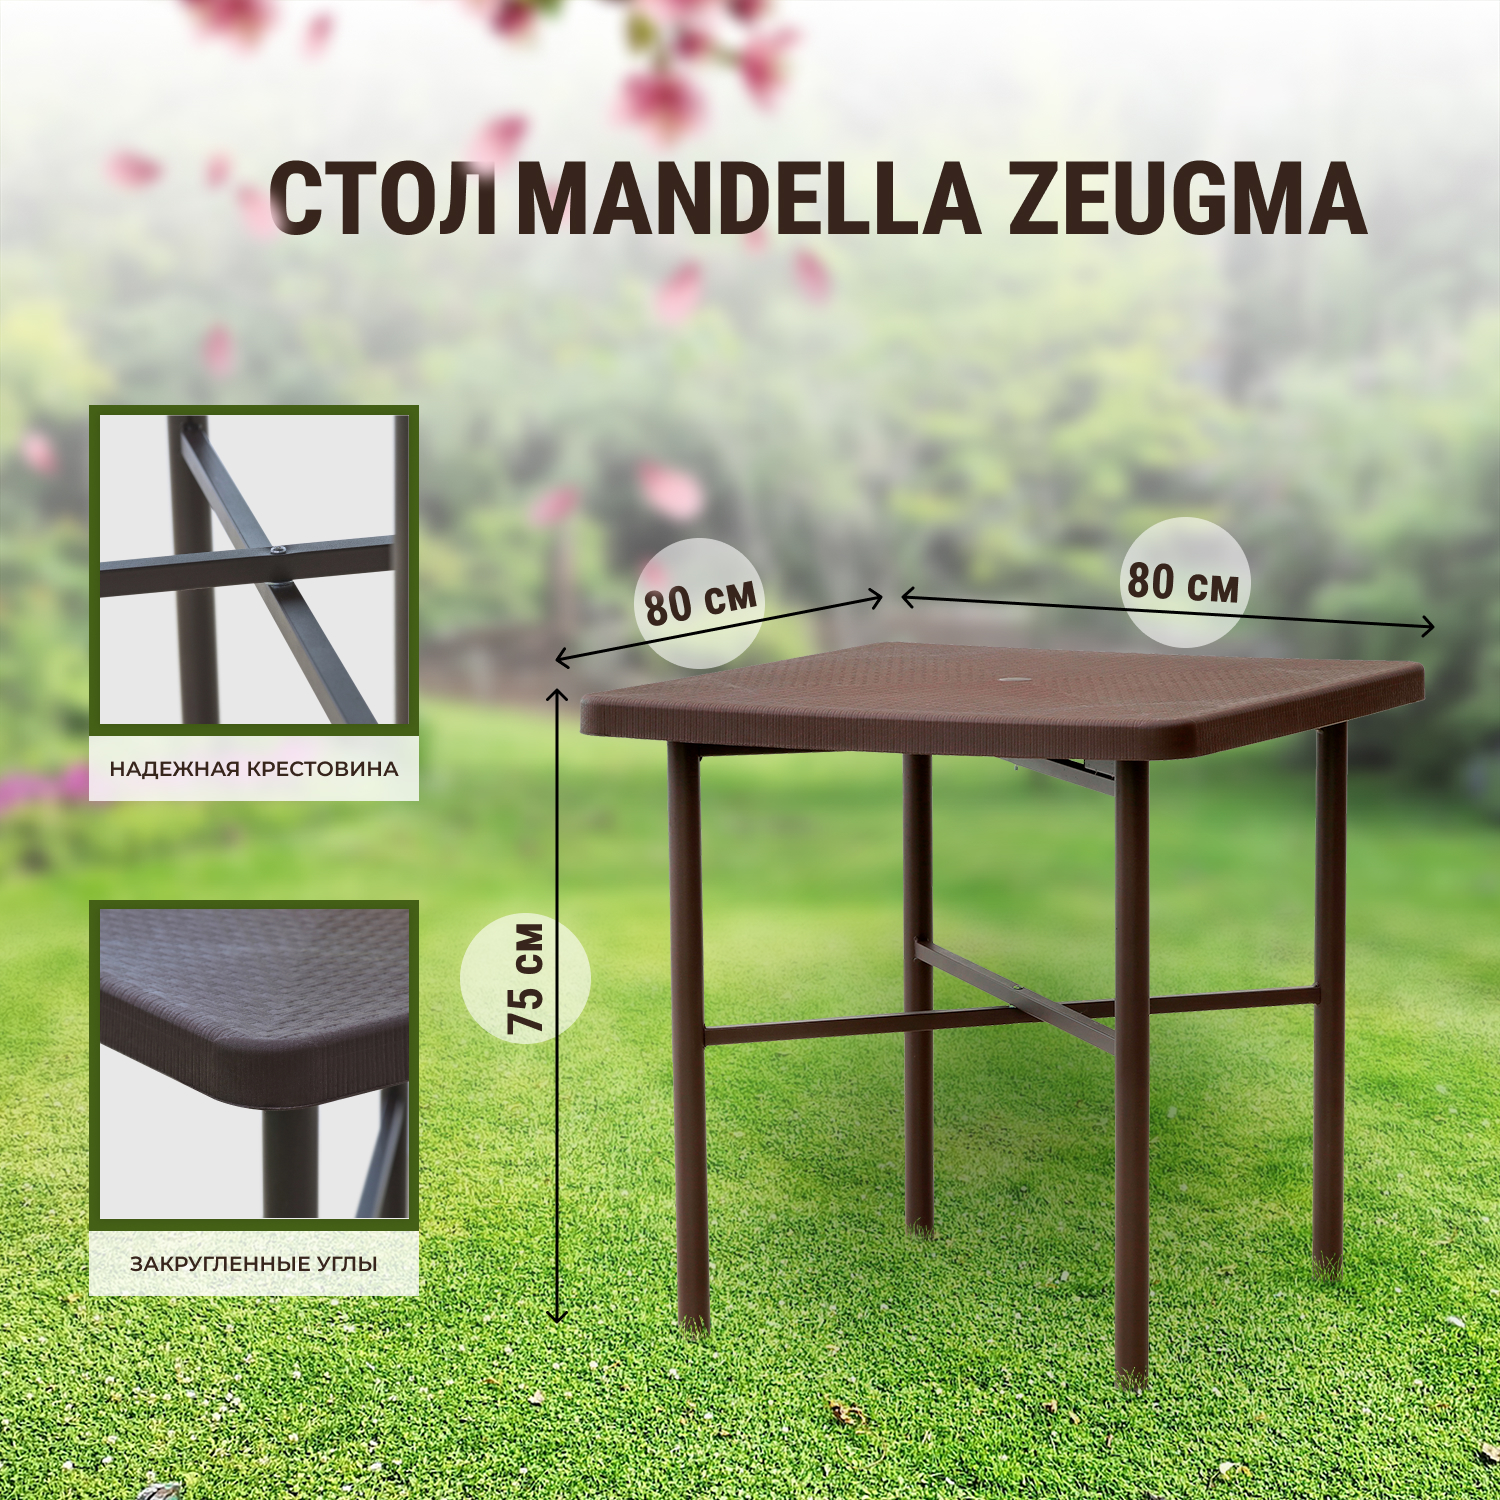 Комплект садовой мебели Mandella Zeugma and Star коричневый из 5 предметов, размер 80х80 - фото 3